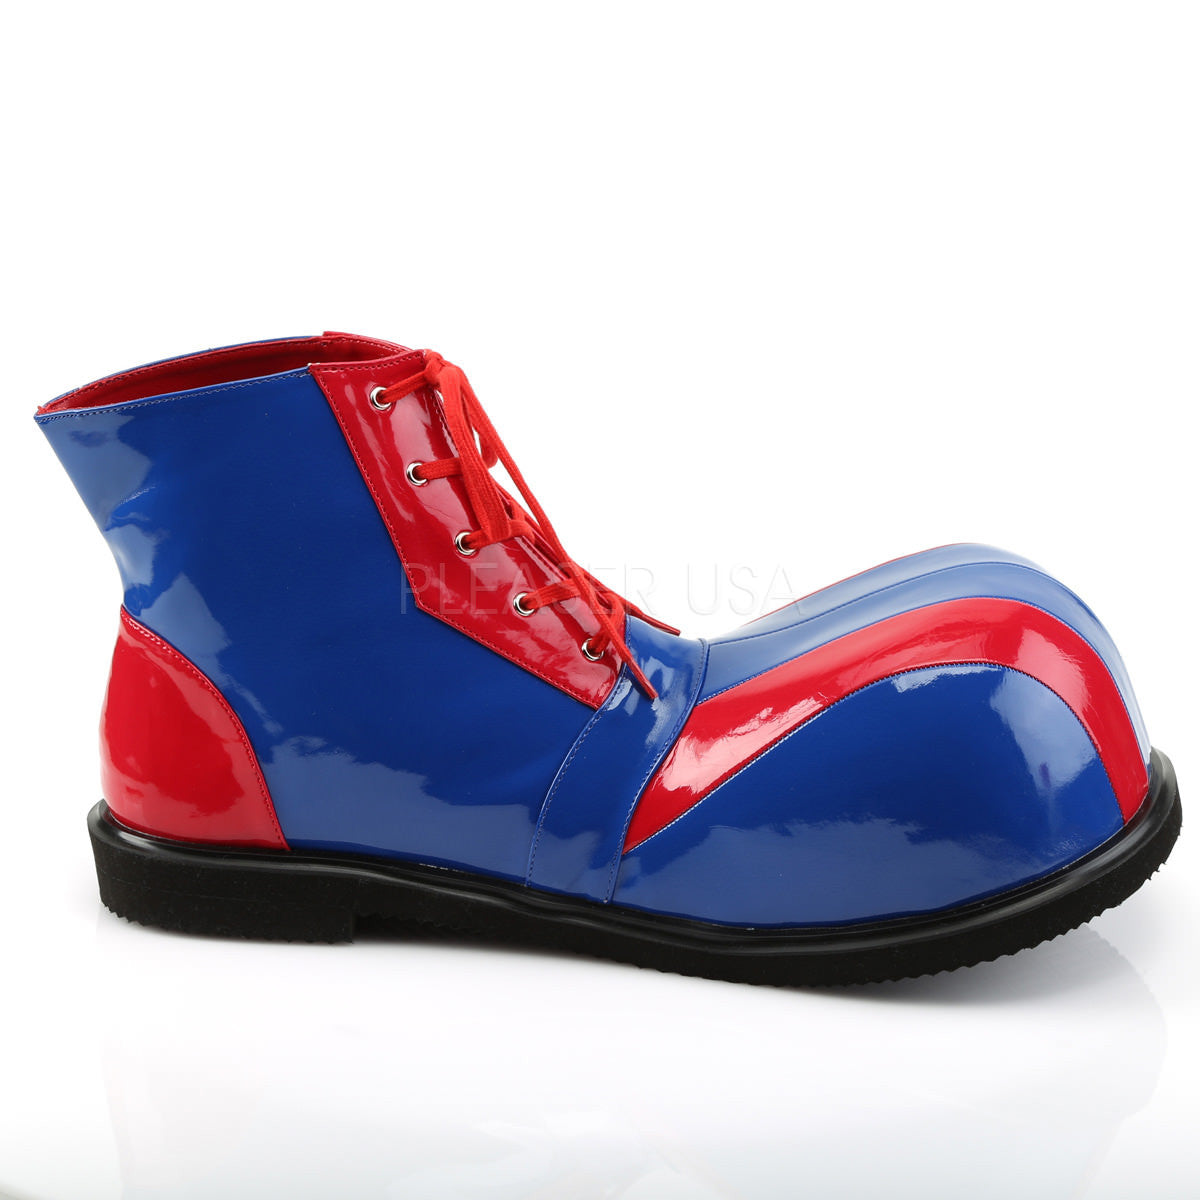 FUNTASMA CLOWN-05 Red-Blue Pat Clown Shoes